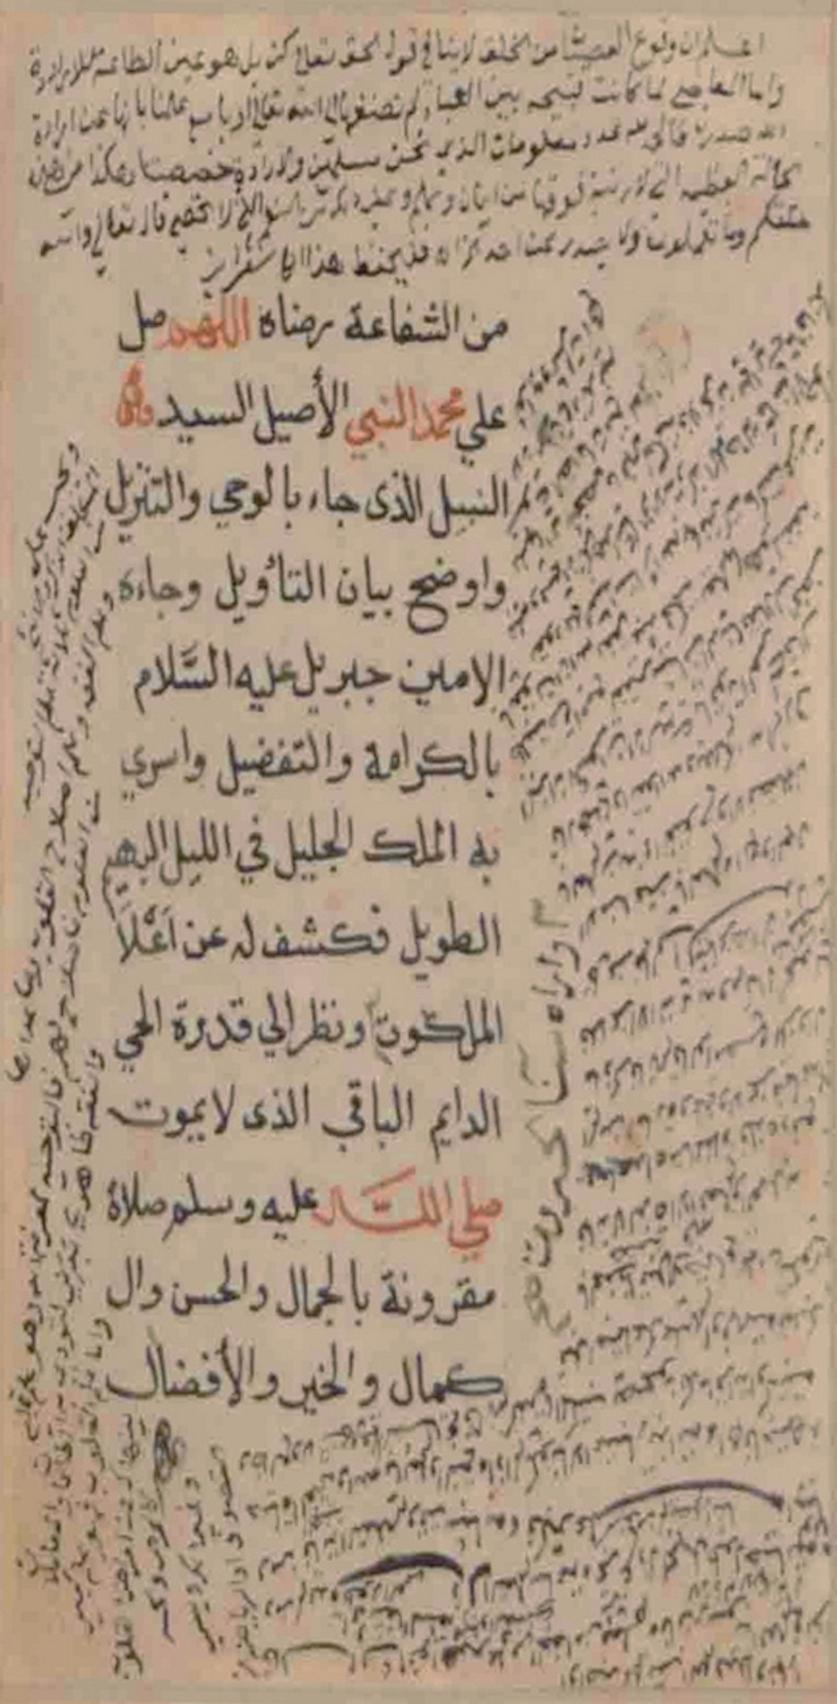 Salla Alla Muhammad An-Nabi - Arabische Kalligraphie  ist ein wunderschönes und wertvolles Manuskript mit heiligen islamischen Versen in einem alten kalligrafischen Stil.

Eine Seite, einseitig, in arabischer Sprache, das Originalblatt (cm 17 x 11)